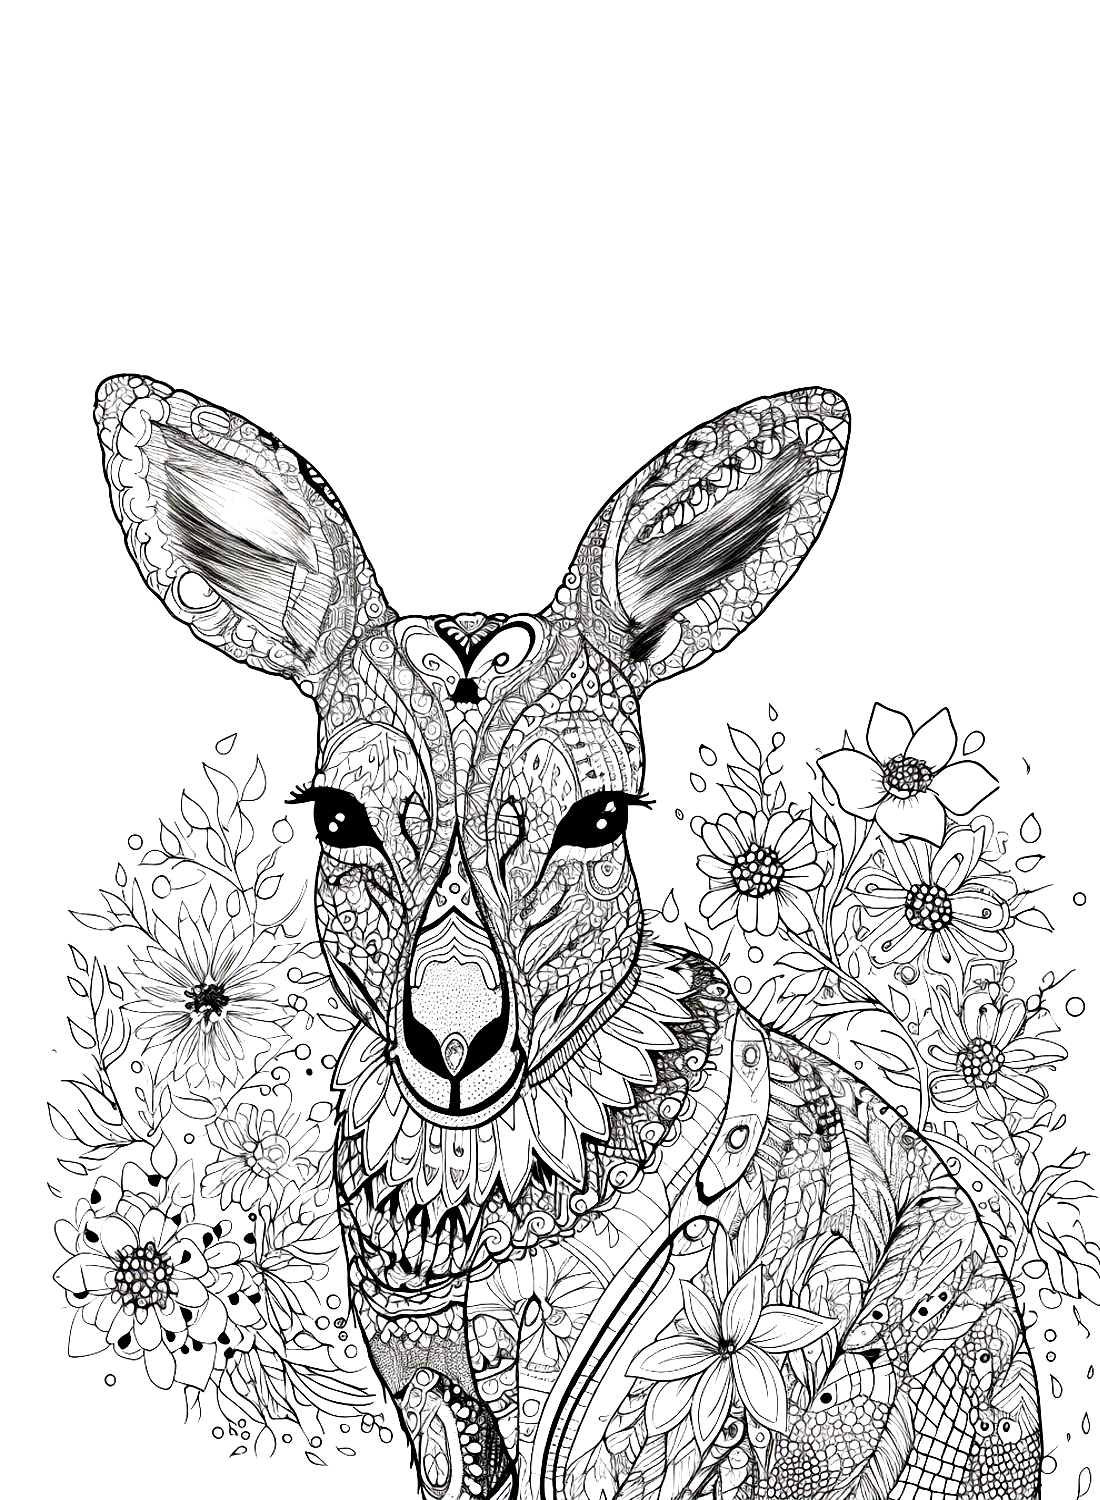 Kangaroo with patterns from Kangaroo